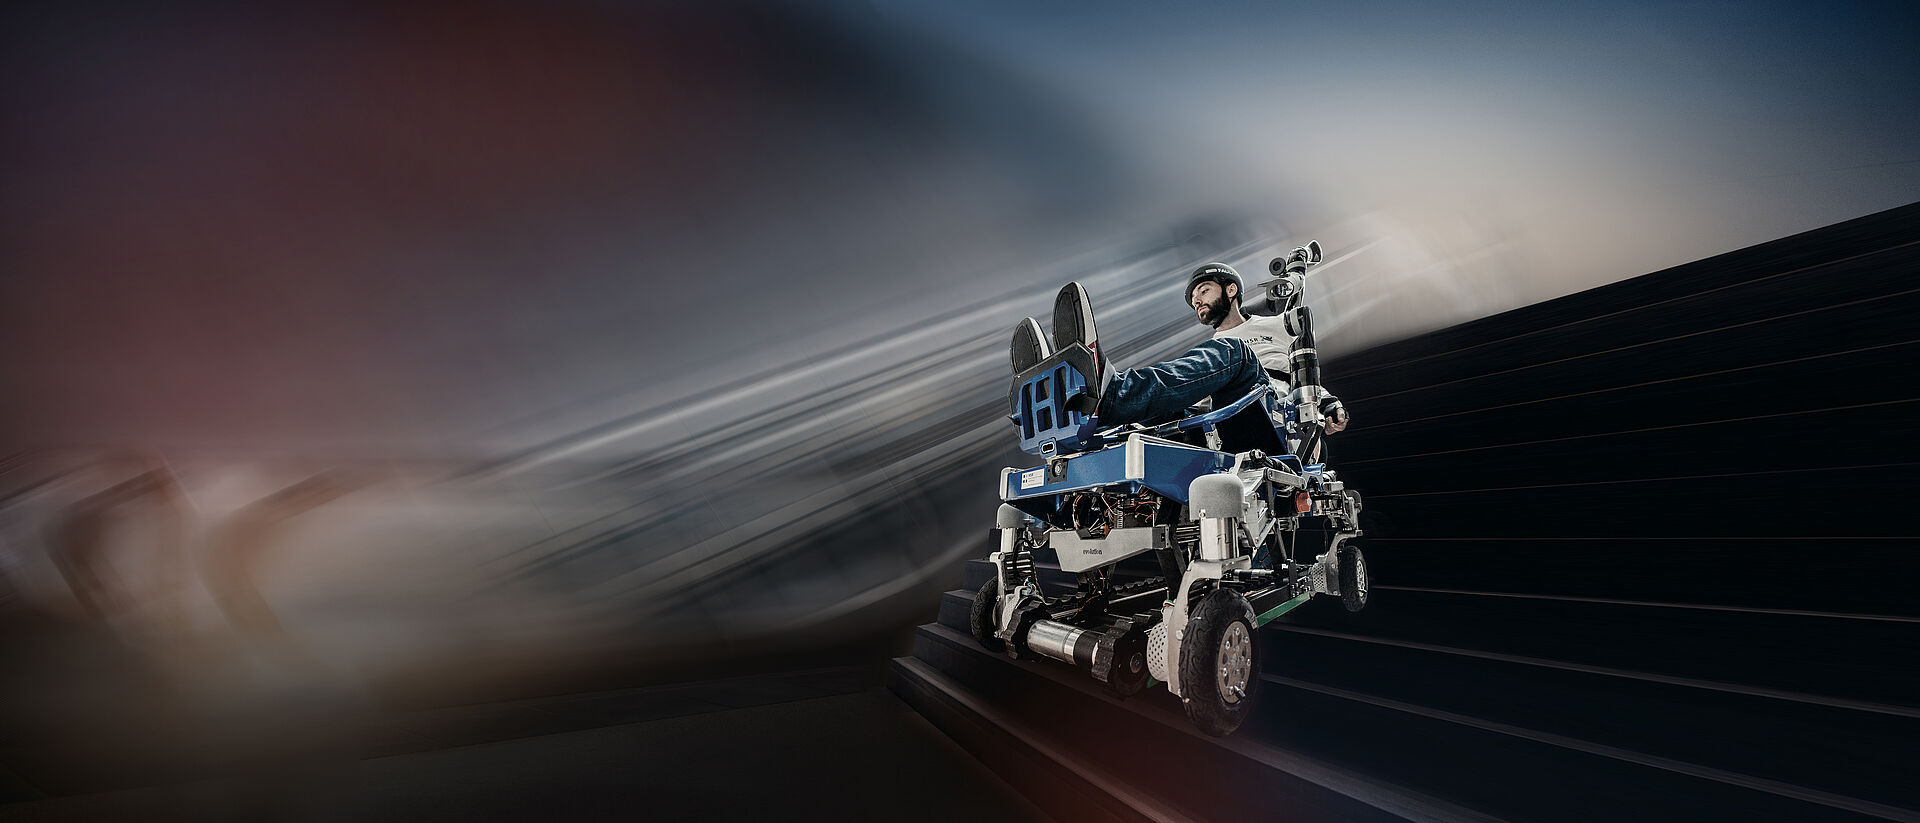 DC-Motoren für HSR team motorisierter Rollstuhl Wettbewerb